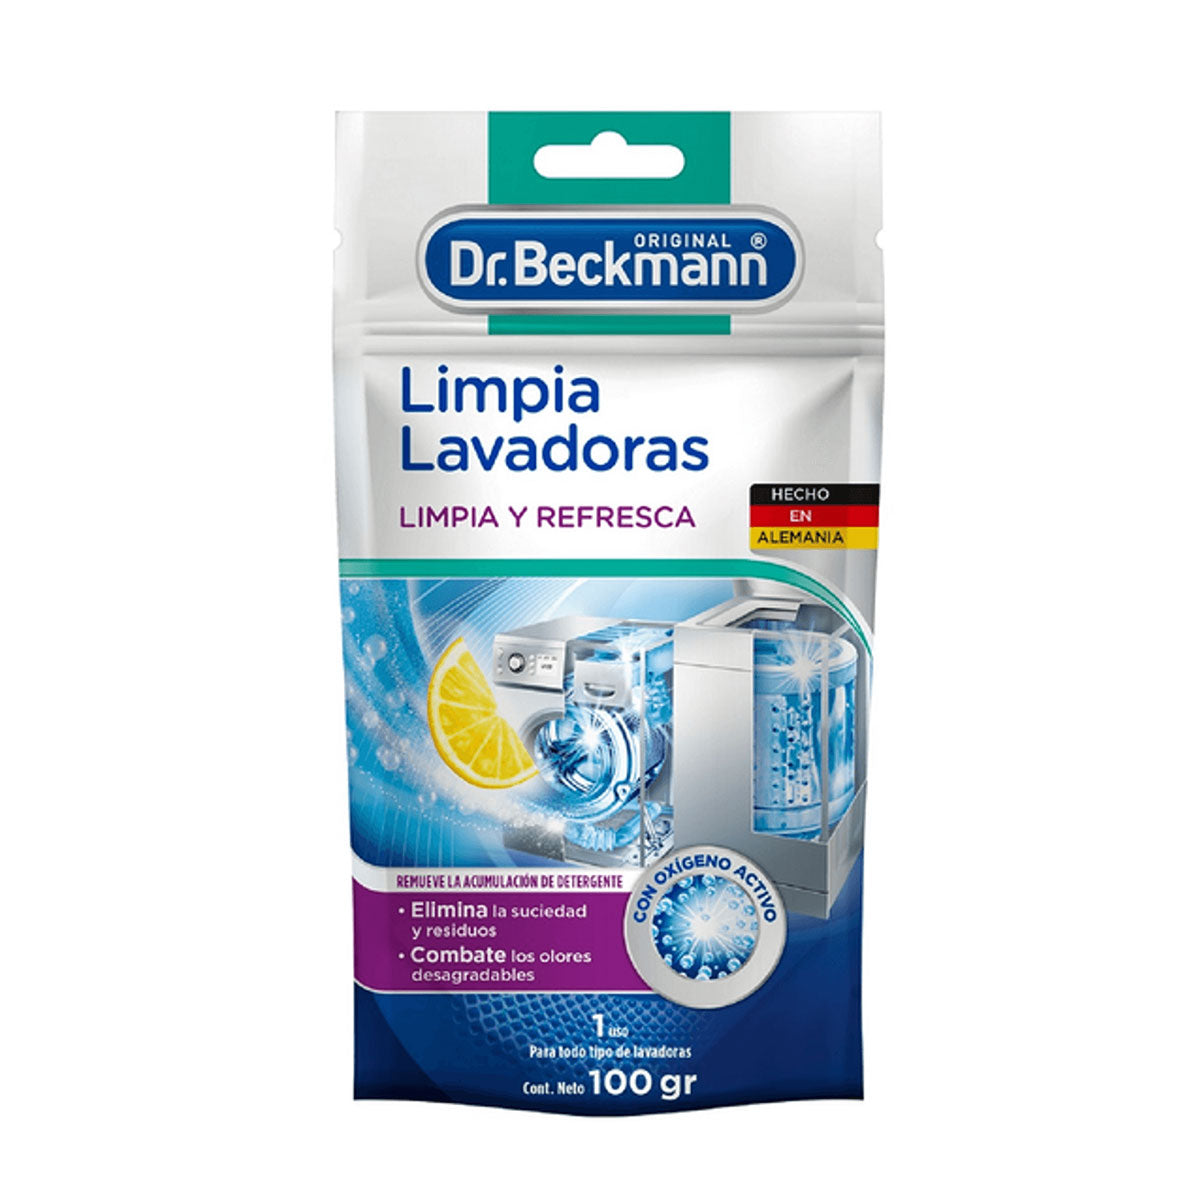 Limpiador de Lavadoras 1 uso 100 gr Dr. Beckmann. Producto Alemán Sustentable